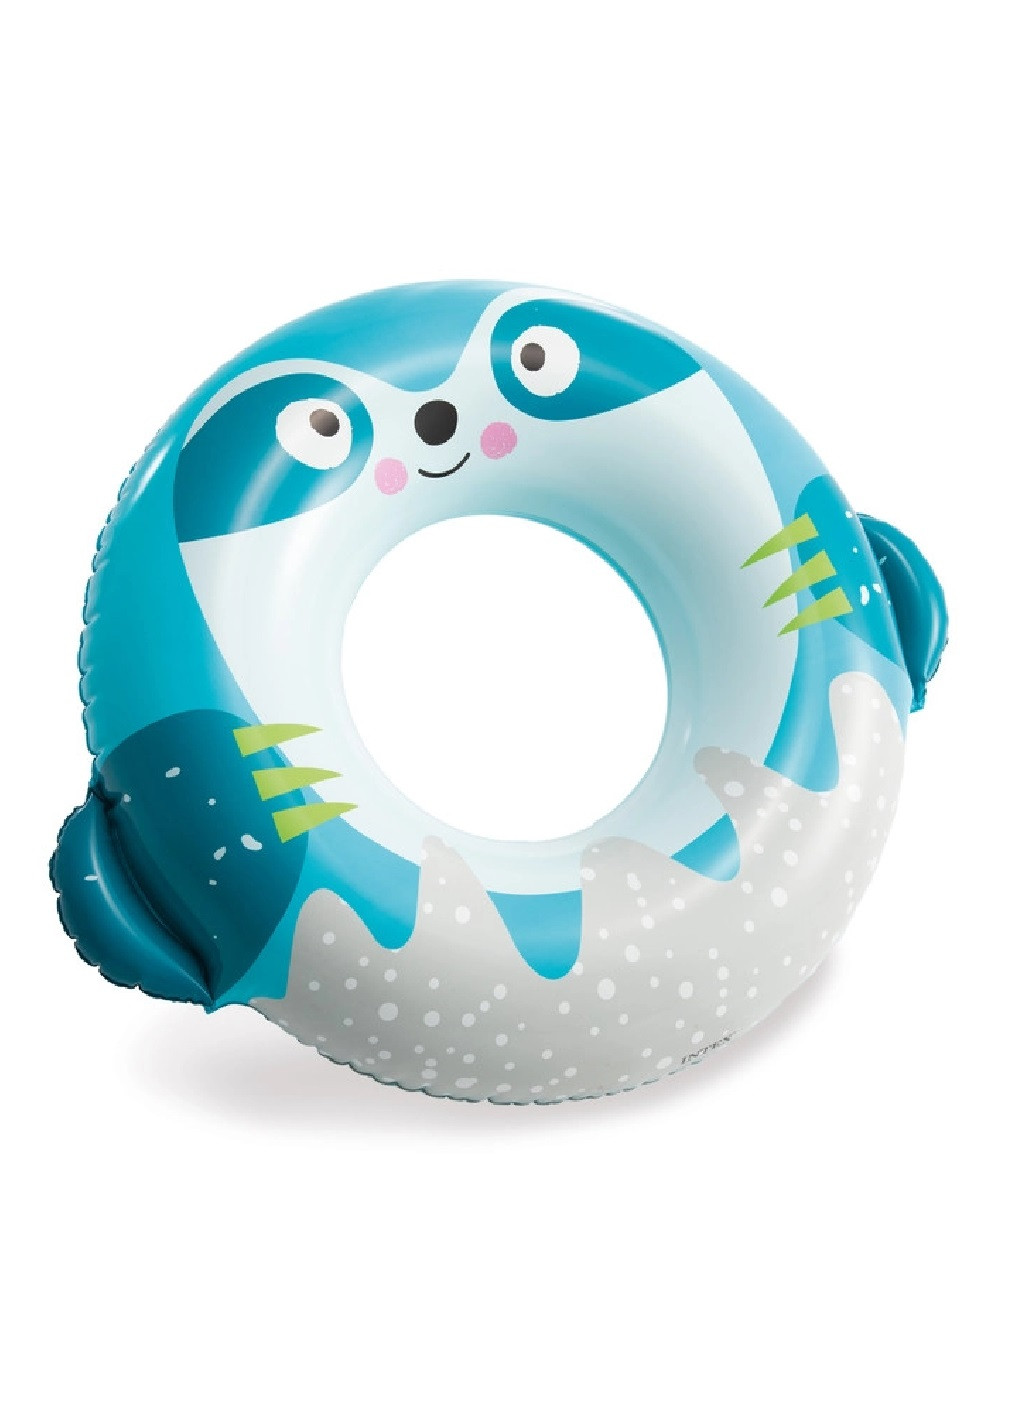 Надувний пляжний дитячий одномісний круг для плавання для дітей від 8 років 91х76 см (474519-Prob) Ленивец Unbranded (258630795)